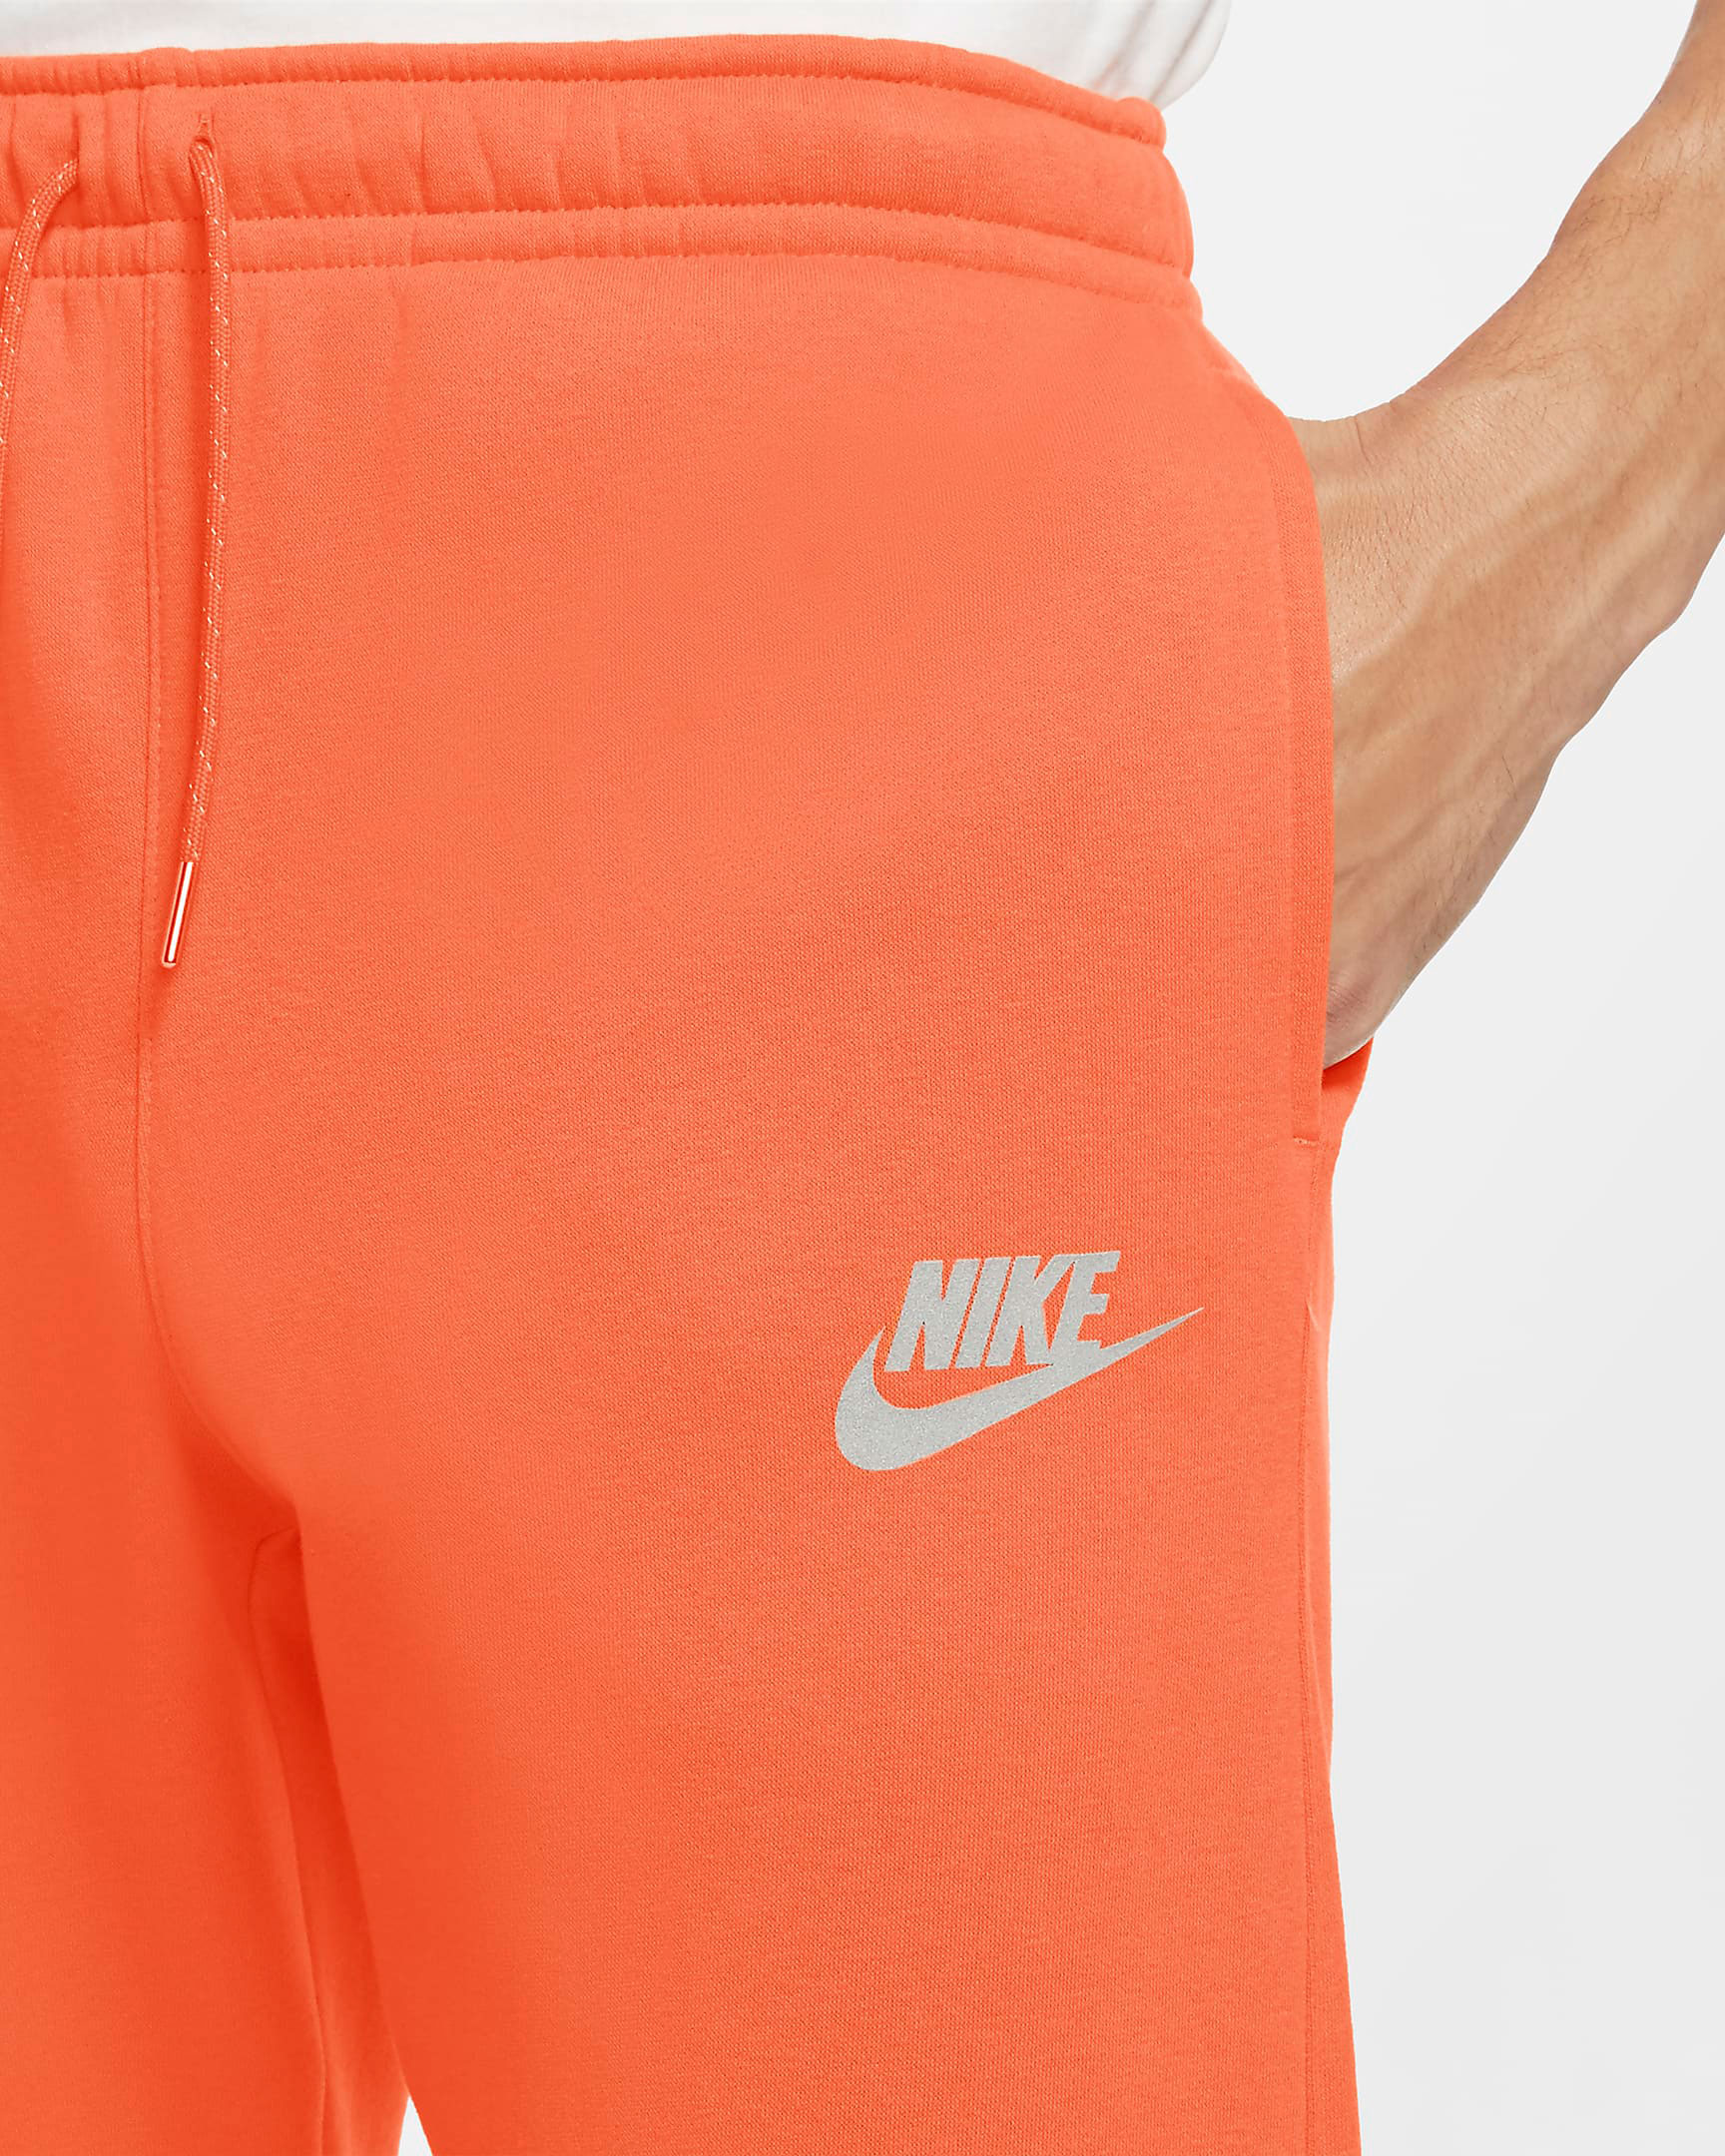 nike-sportswear-club-fleece-orange-reflective-pants